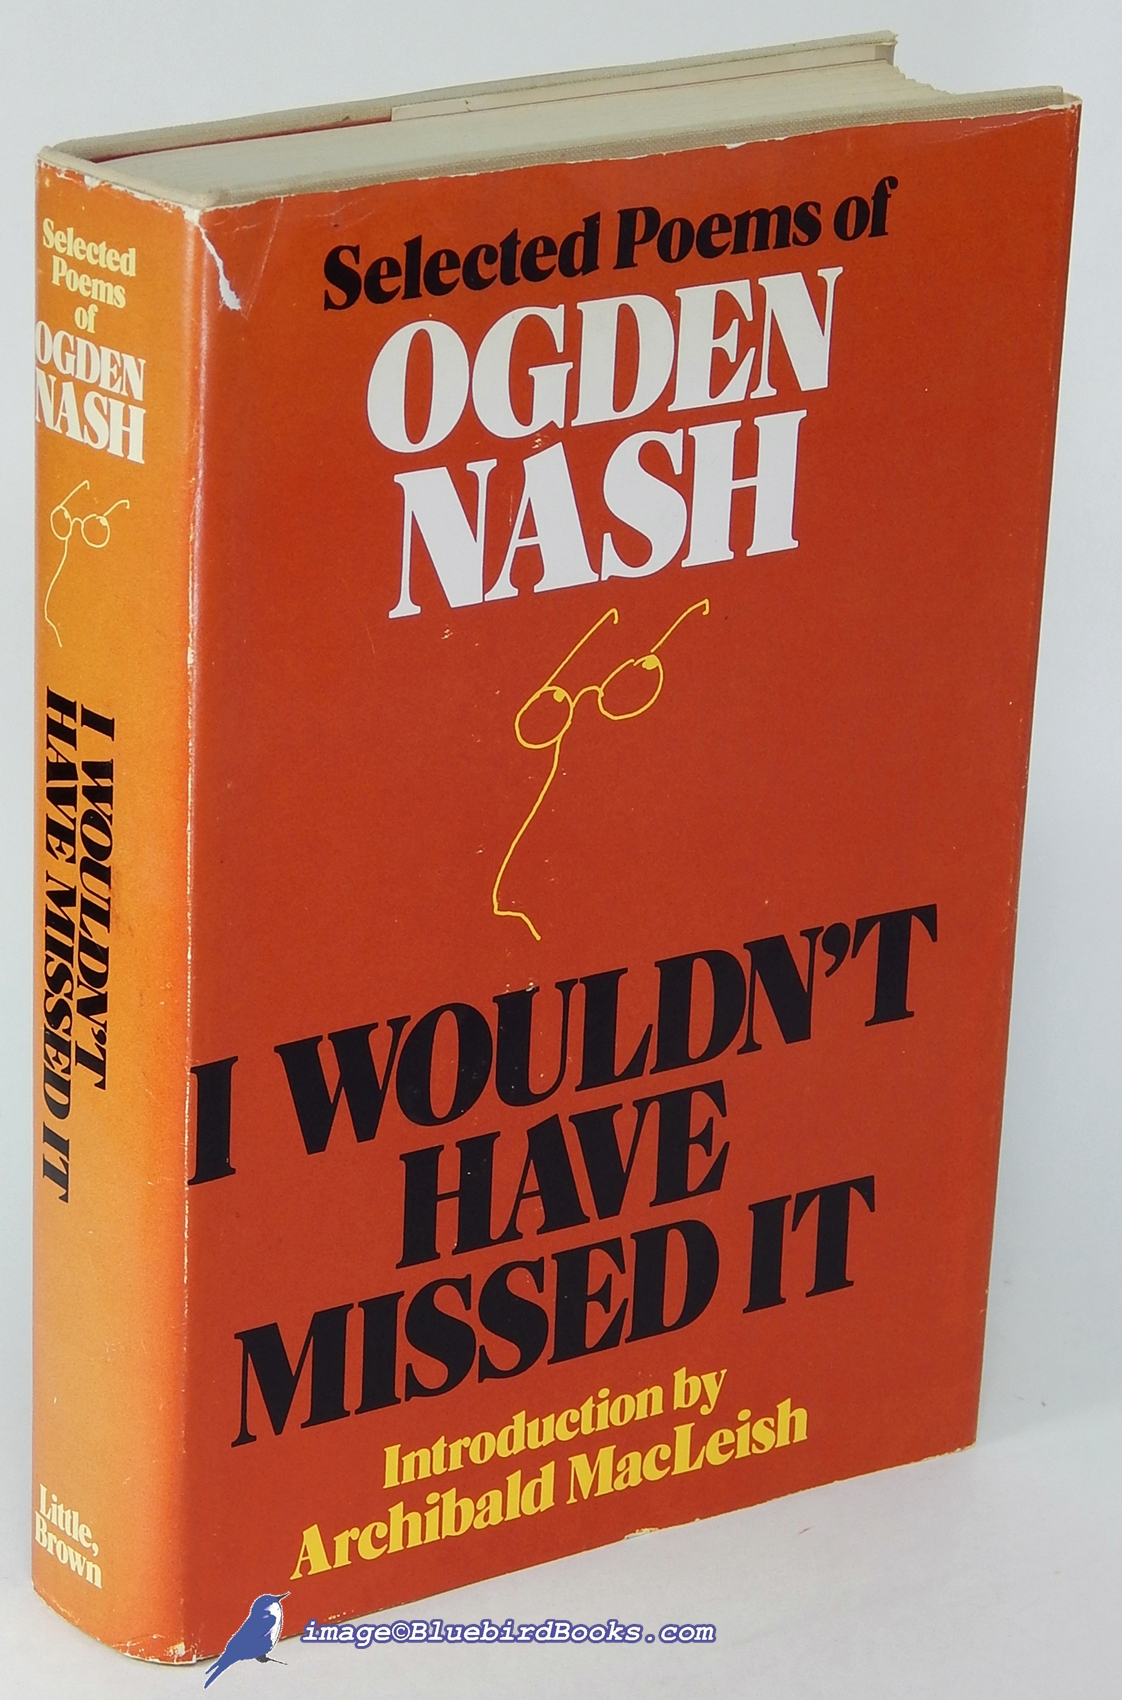 NASH, OGDEN - I Wouldn't Have Missed It: Selected Poems of Ogden Nash